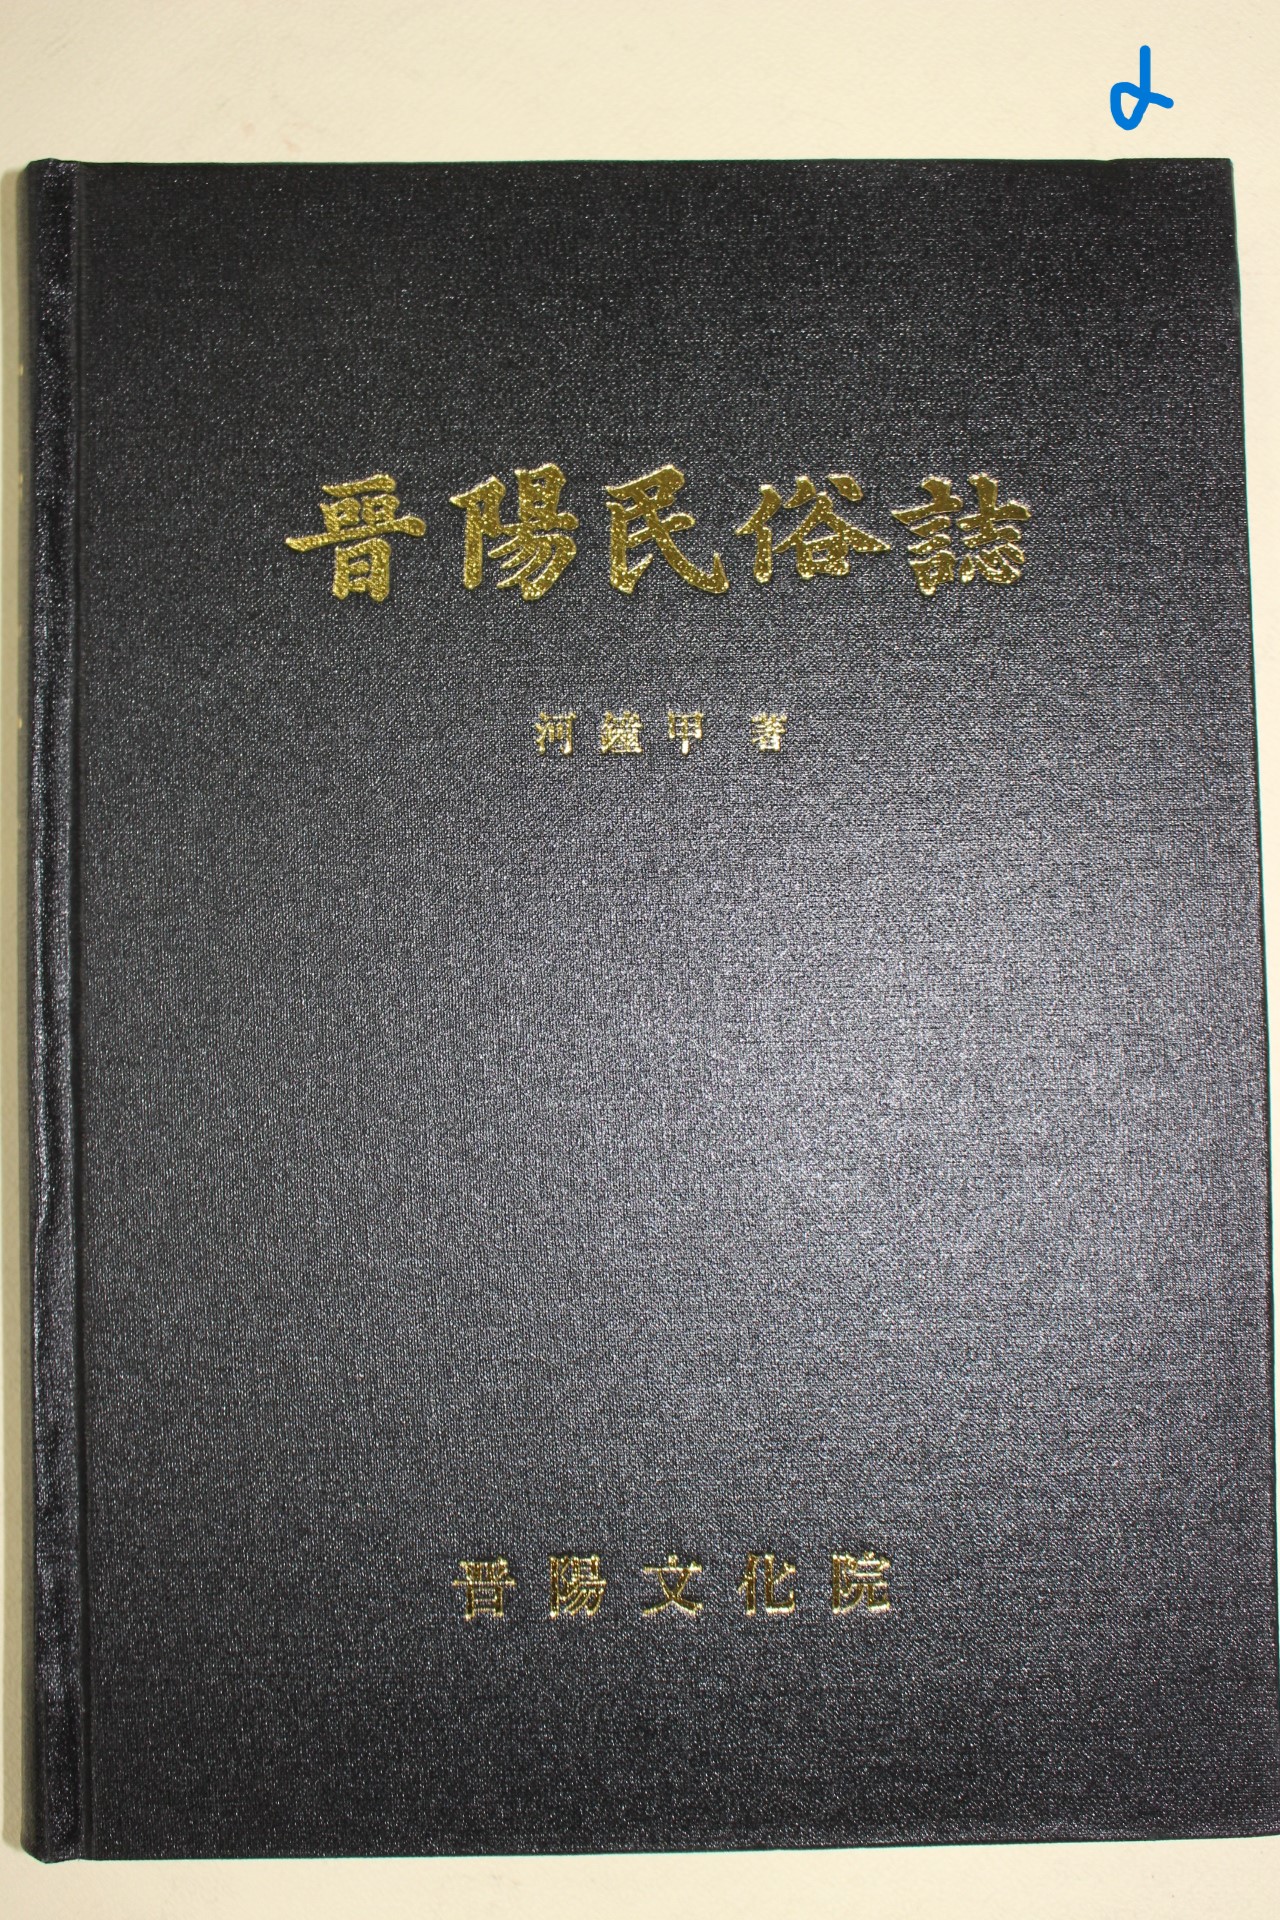 1994년 하종갑(河鐘甲) 진양민속지(晉陽民俗誌)